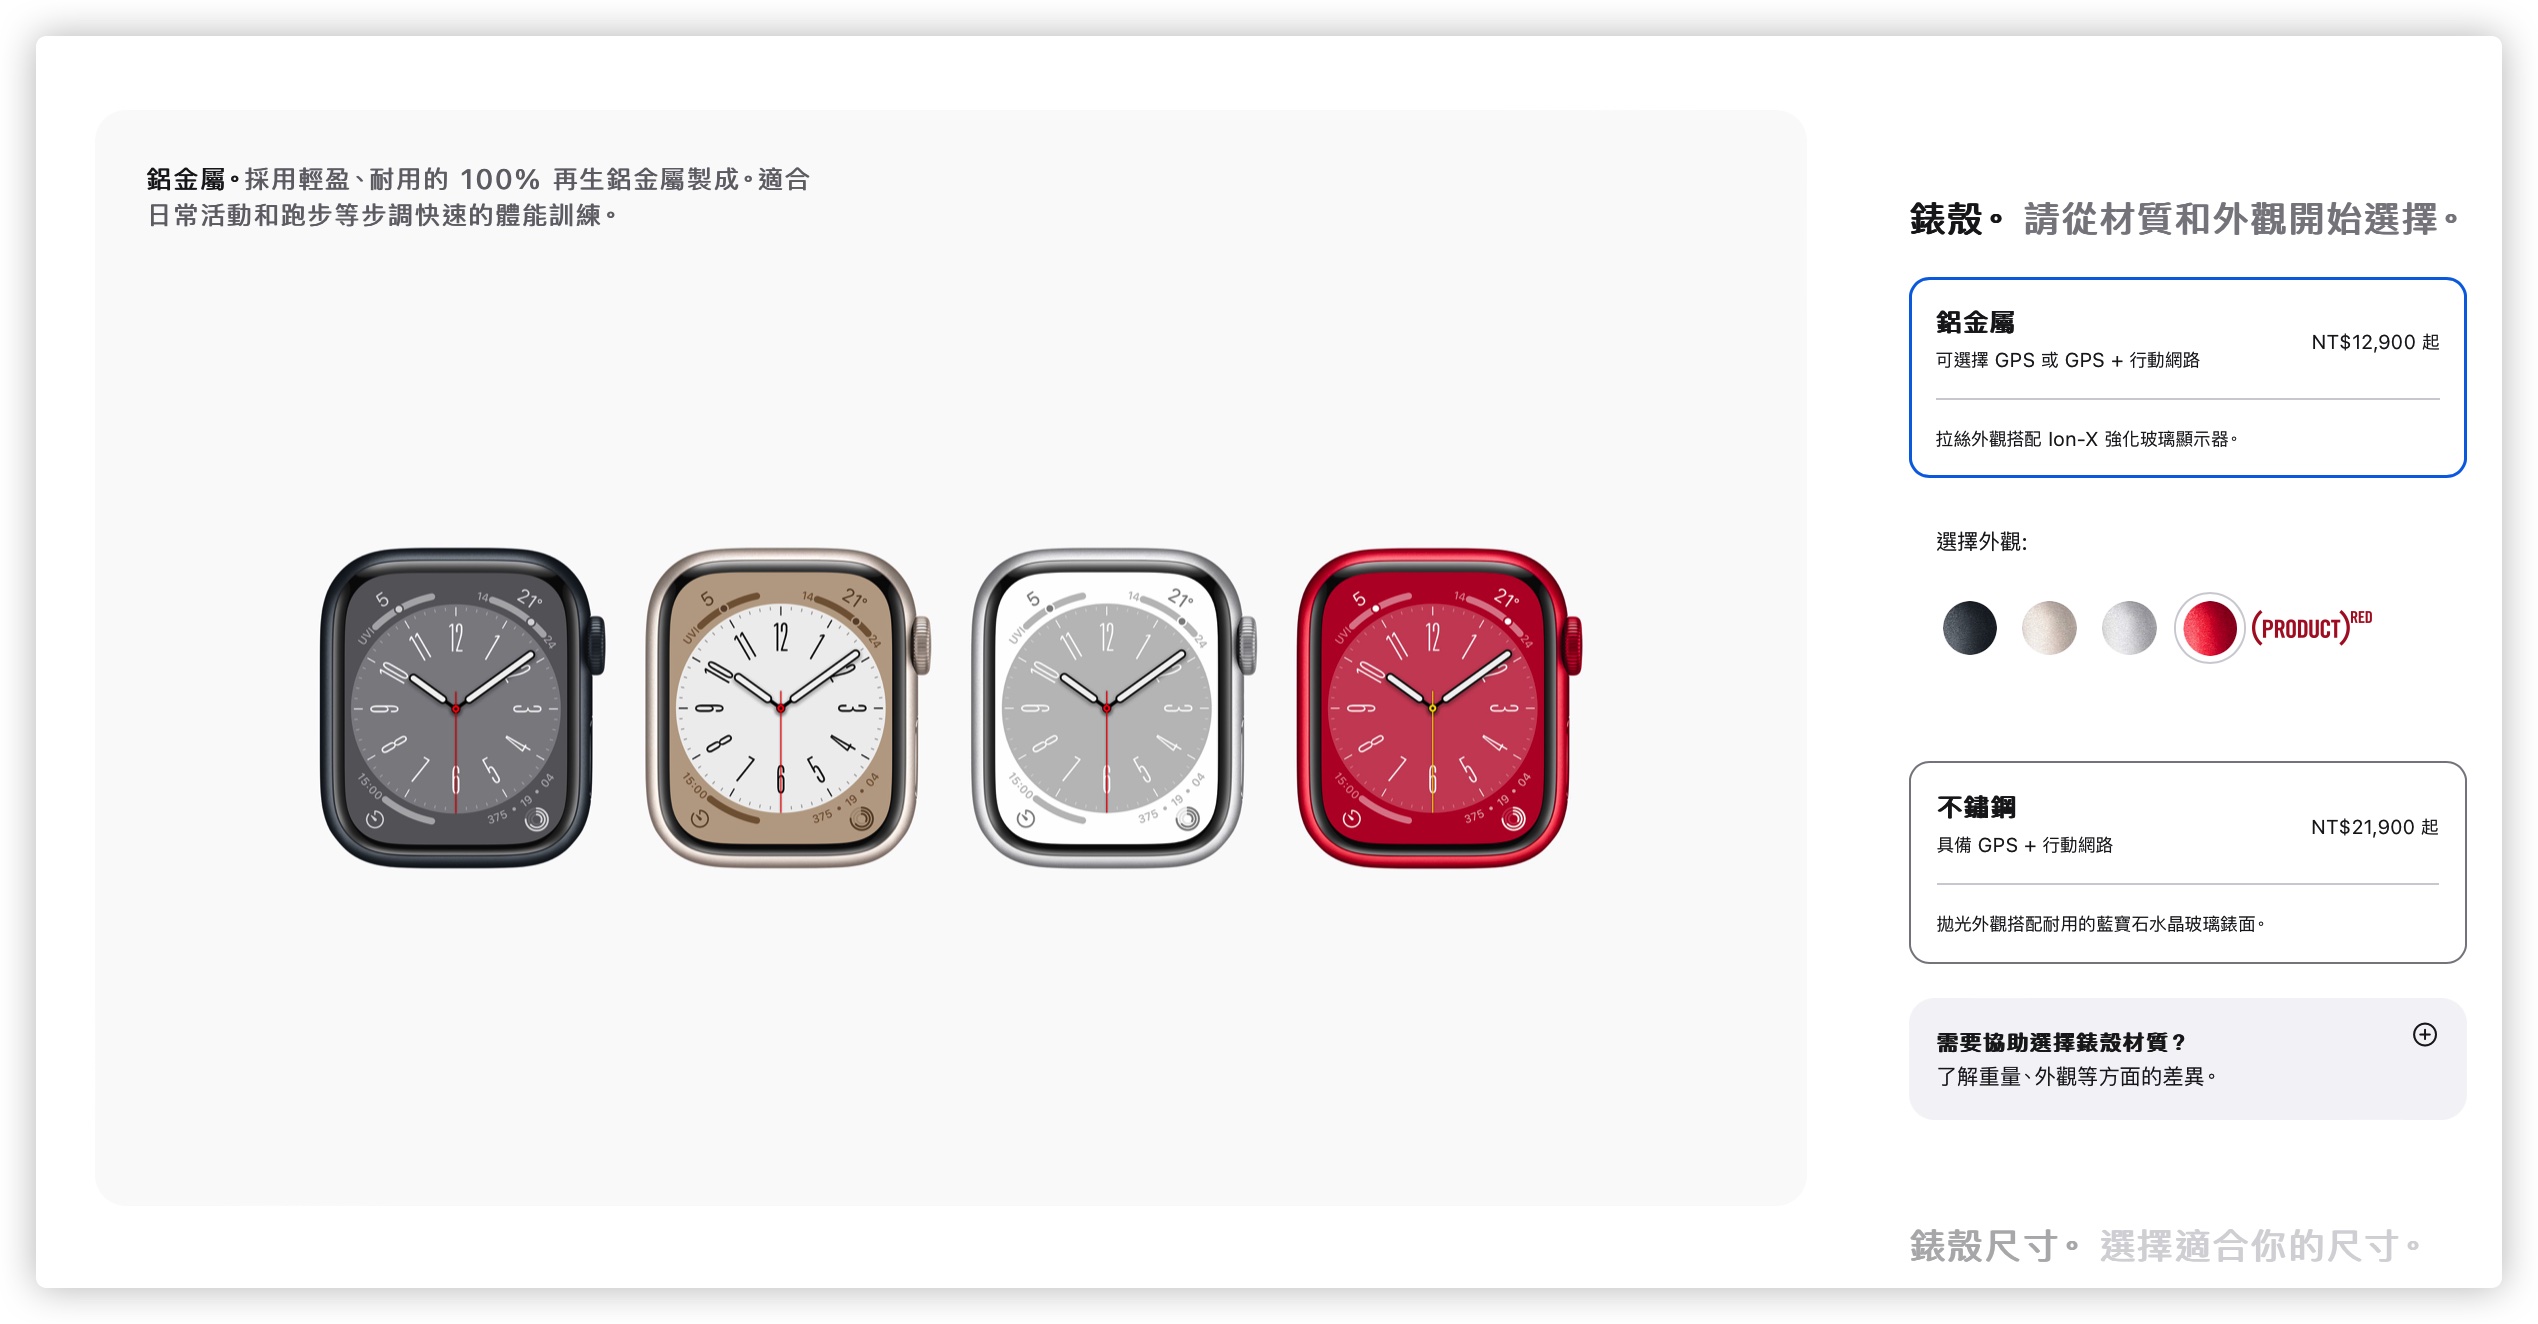 Apple Watch Ultra Apple Watch 8 Apple Watch SE 顏色